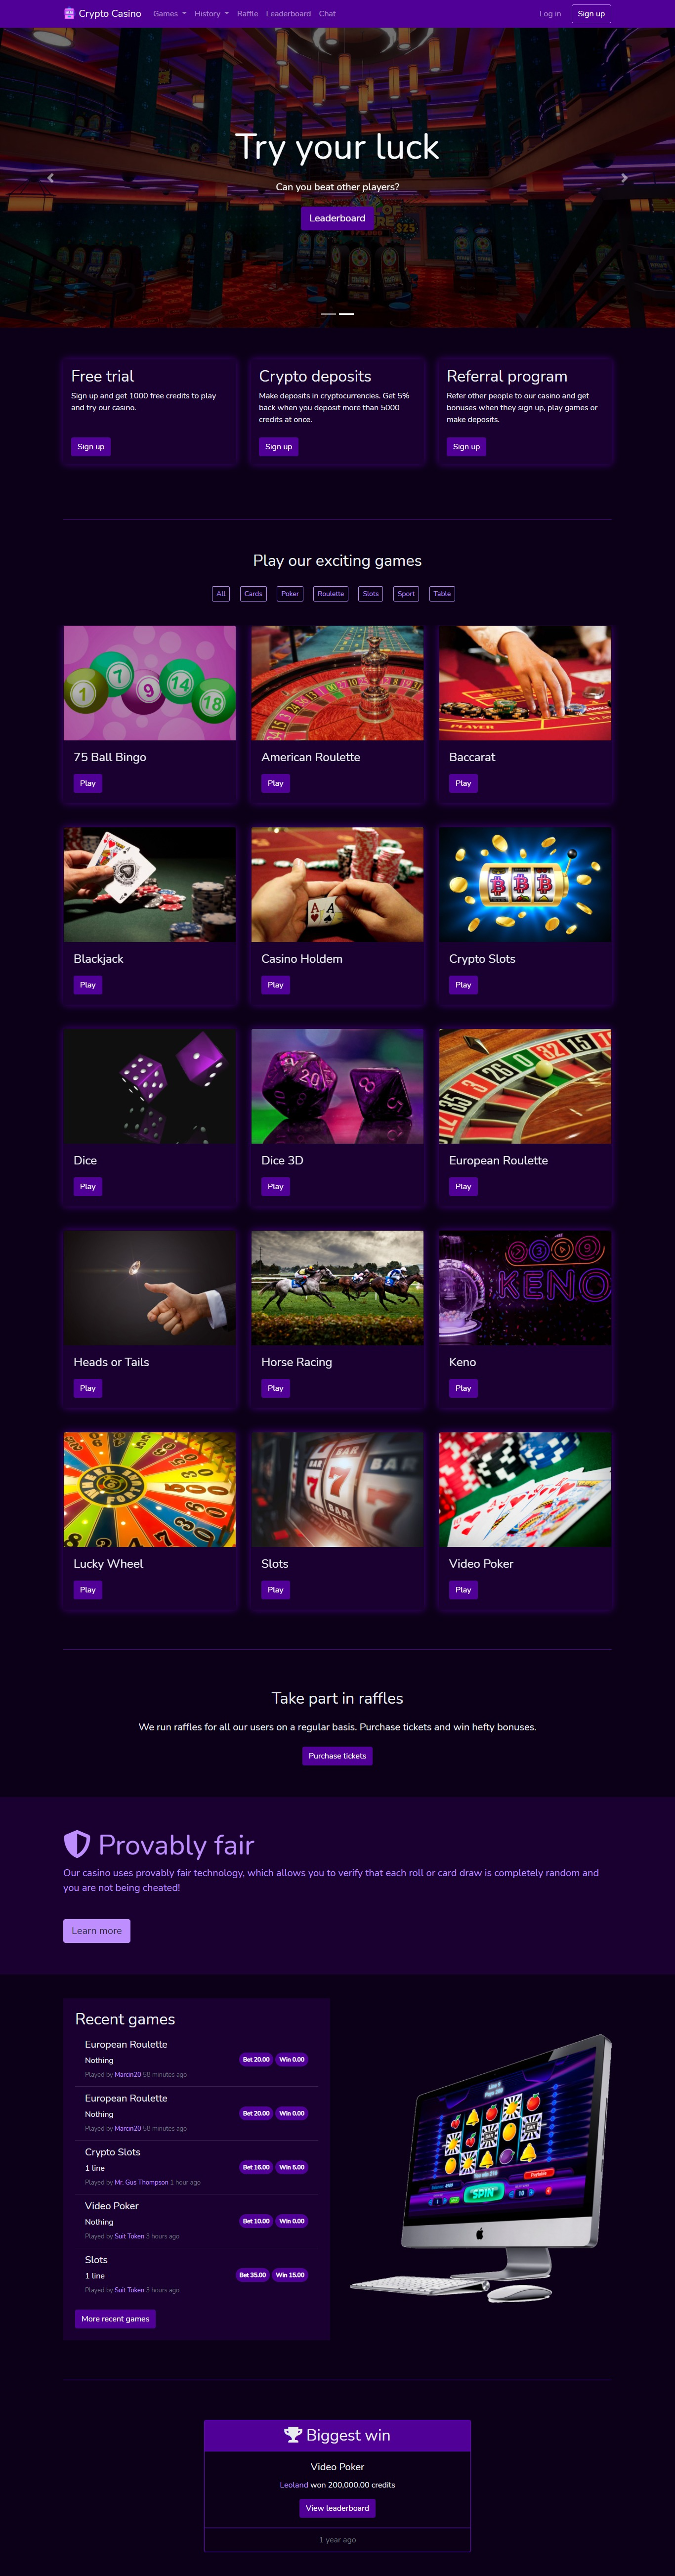 Crypto Casino | Slot Machine | Online Gaming Platform |